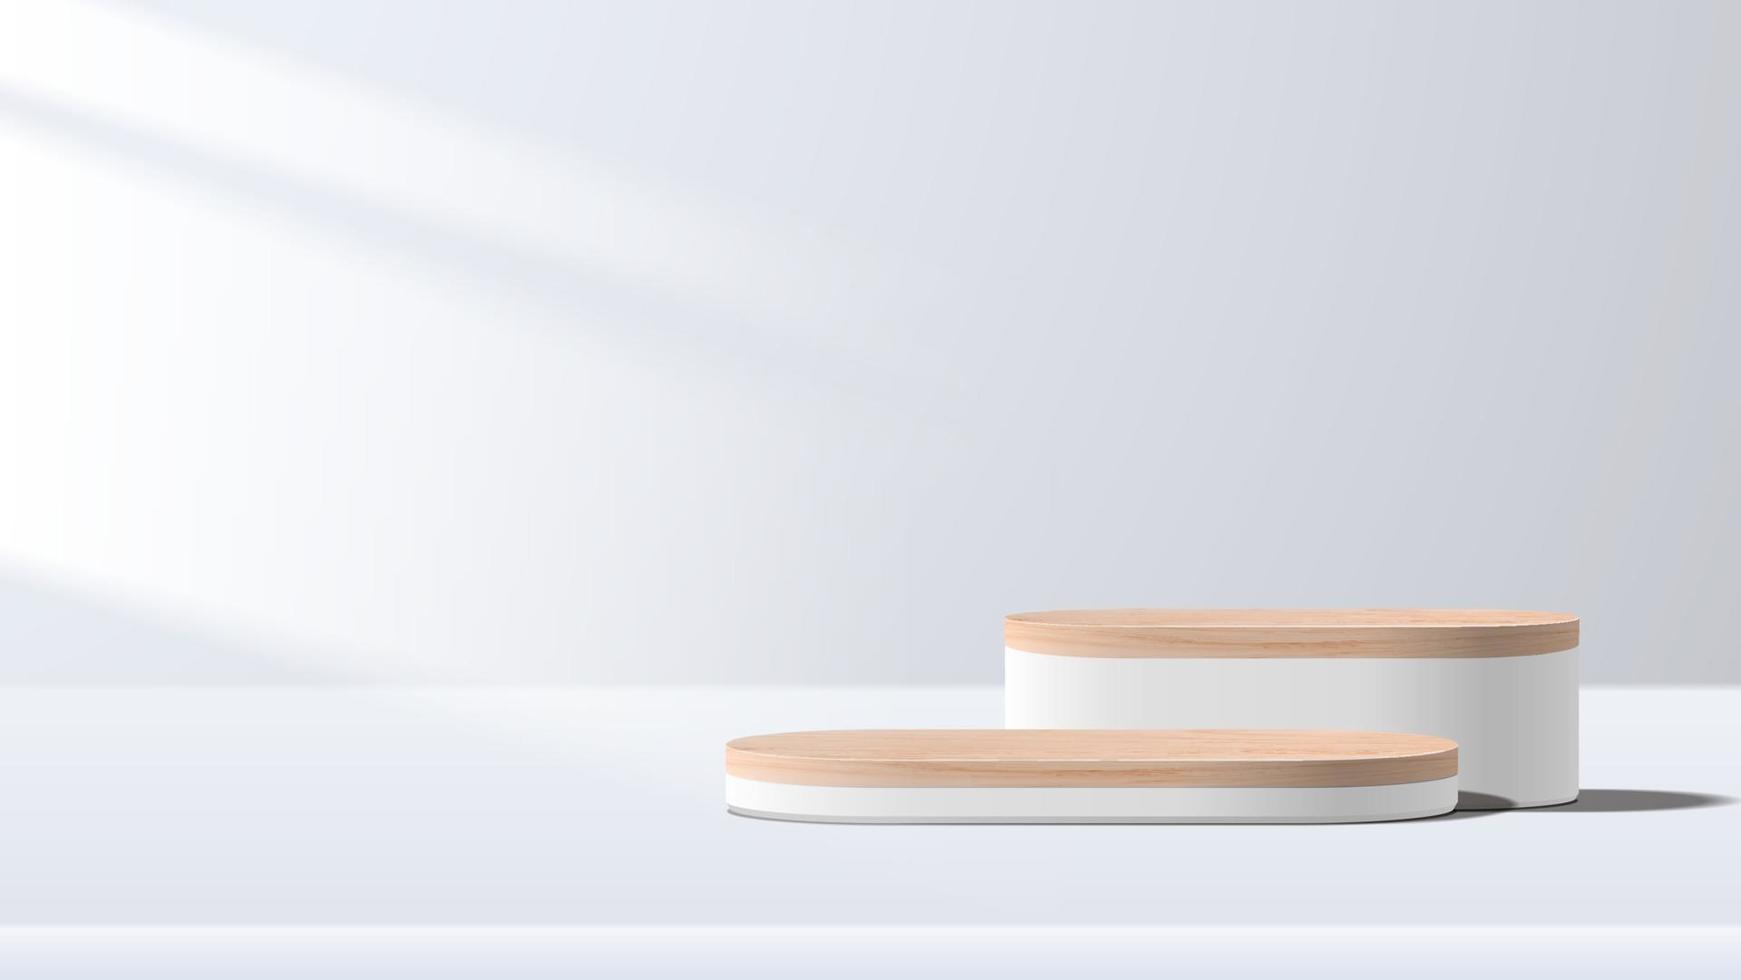 scène minimale abstraite avec des formes géométriques. podium en bois sur fond blanc. présentation du produit, maquette, exposition de produits cosmétiques, podium, piédestal de scène ou plate-forme. vecteur 3D